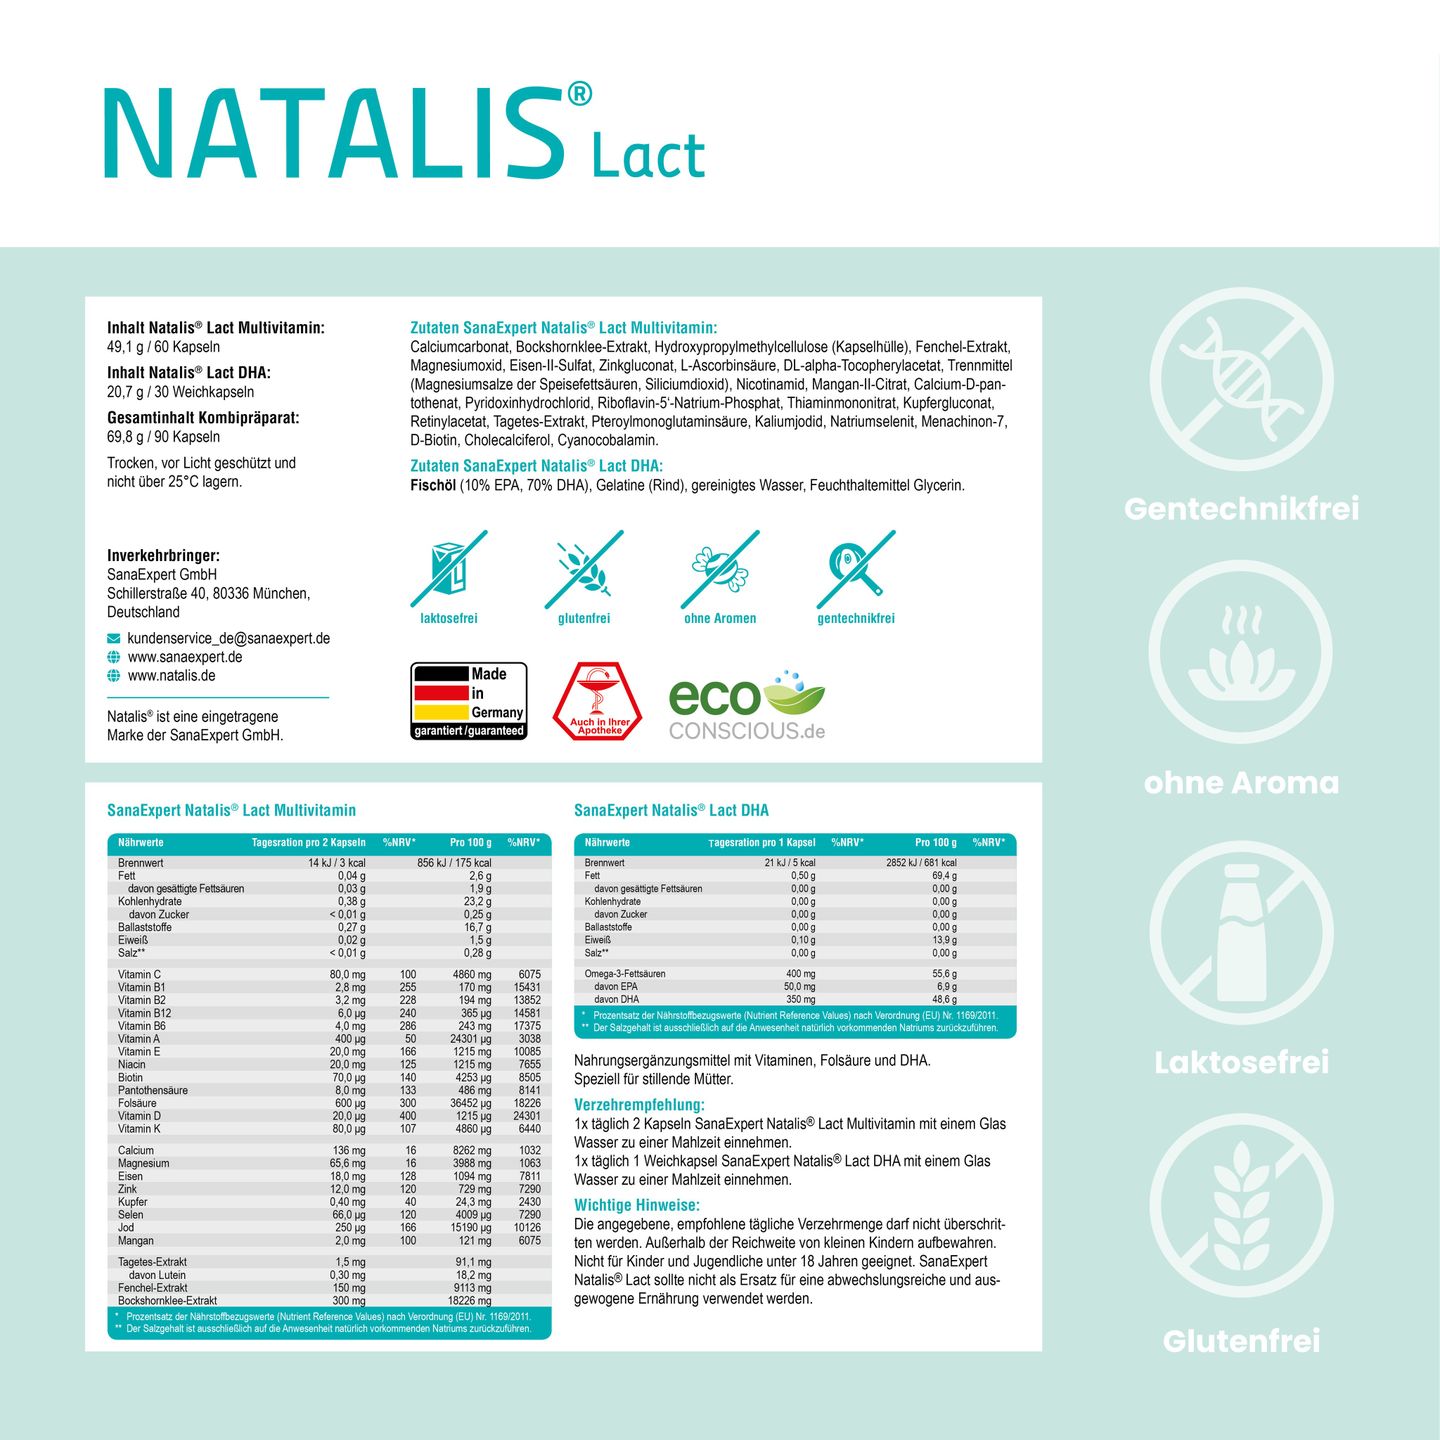 Detaillierte Produktinformationen und Nährwertangaben von Natalis Lact, mit Hinweisen auf die genfreie Herstellung und Laktosefreiheit des Produkts.